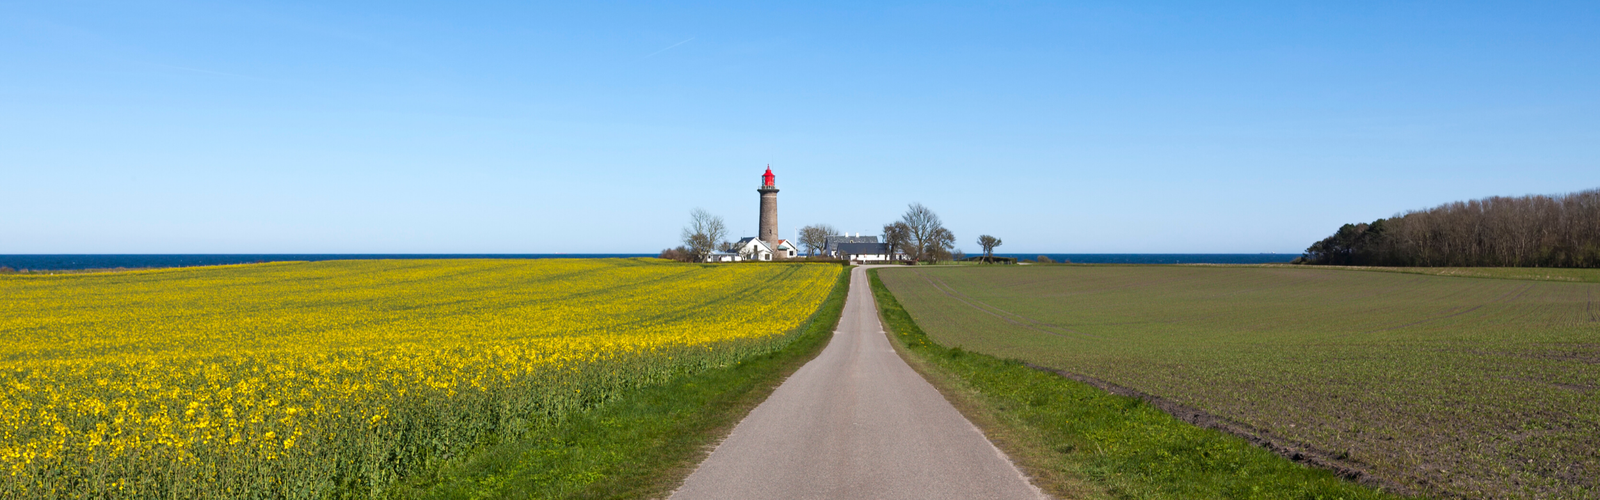 Denemarken landschap stockfoto